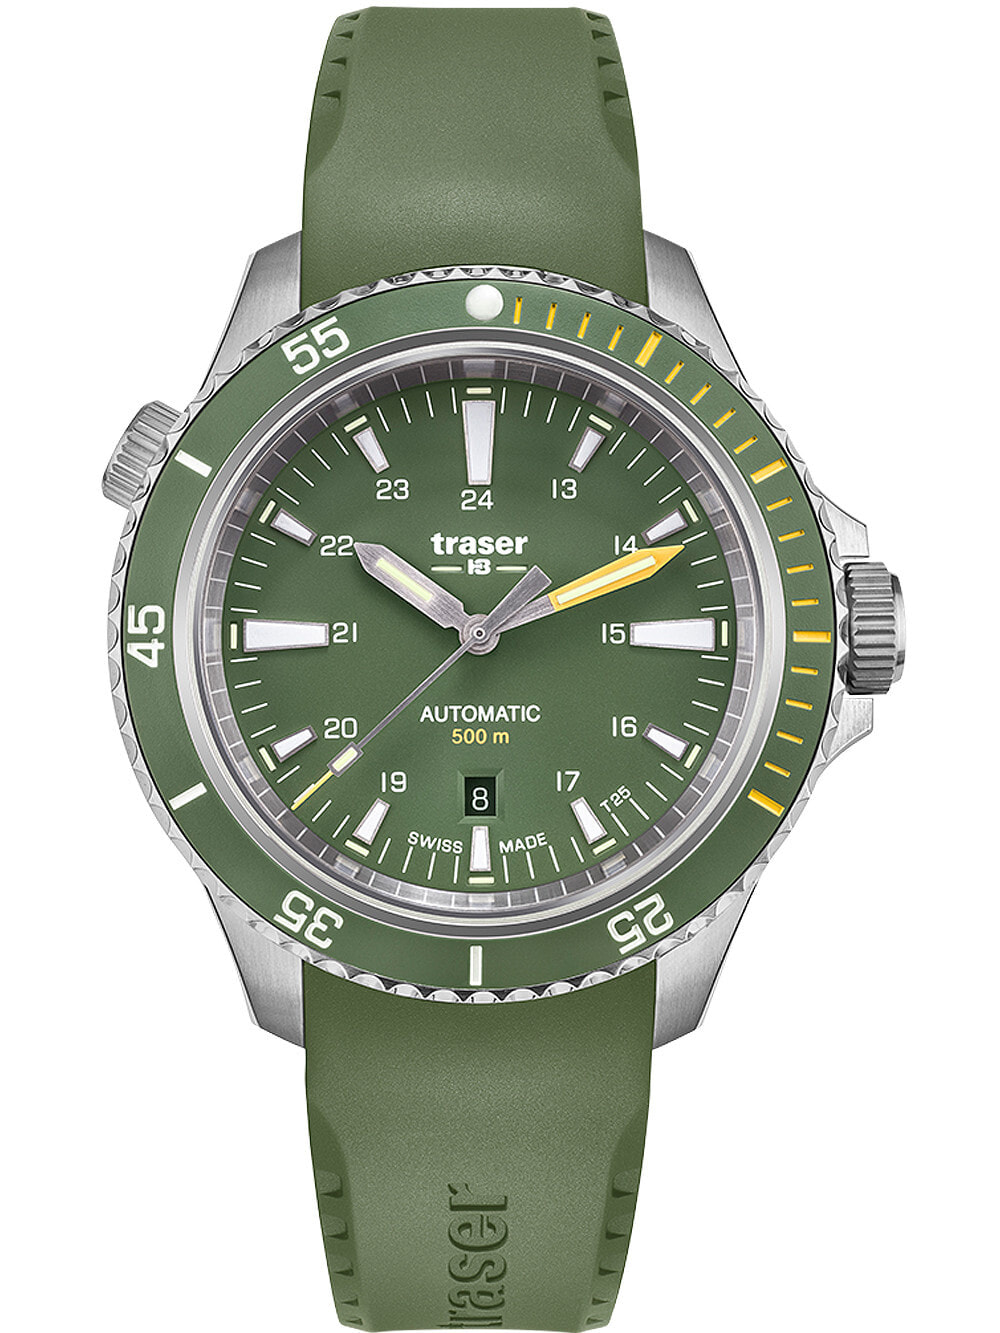 Мужские наручные часы с зеленым силиконовым ремешком Traser H3 110327 P67 Diver Automatik Green 46mm 50ATM